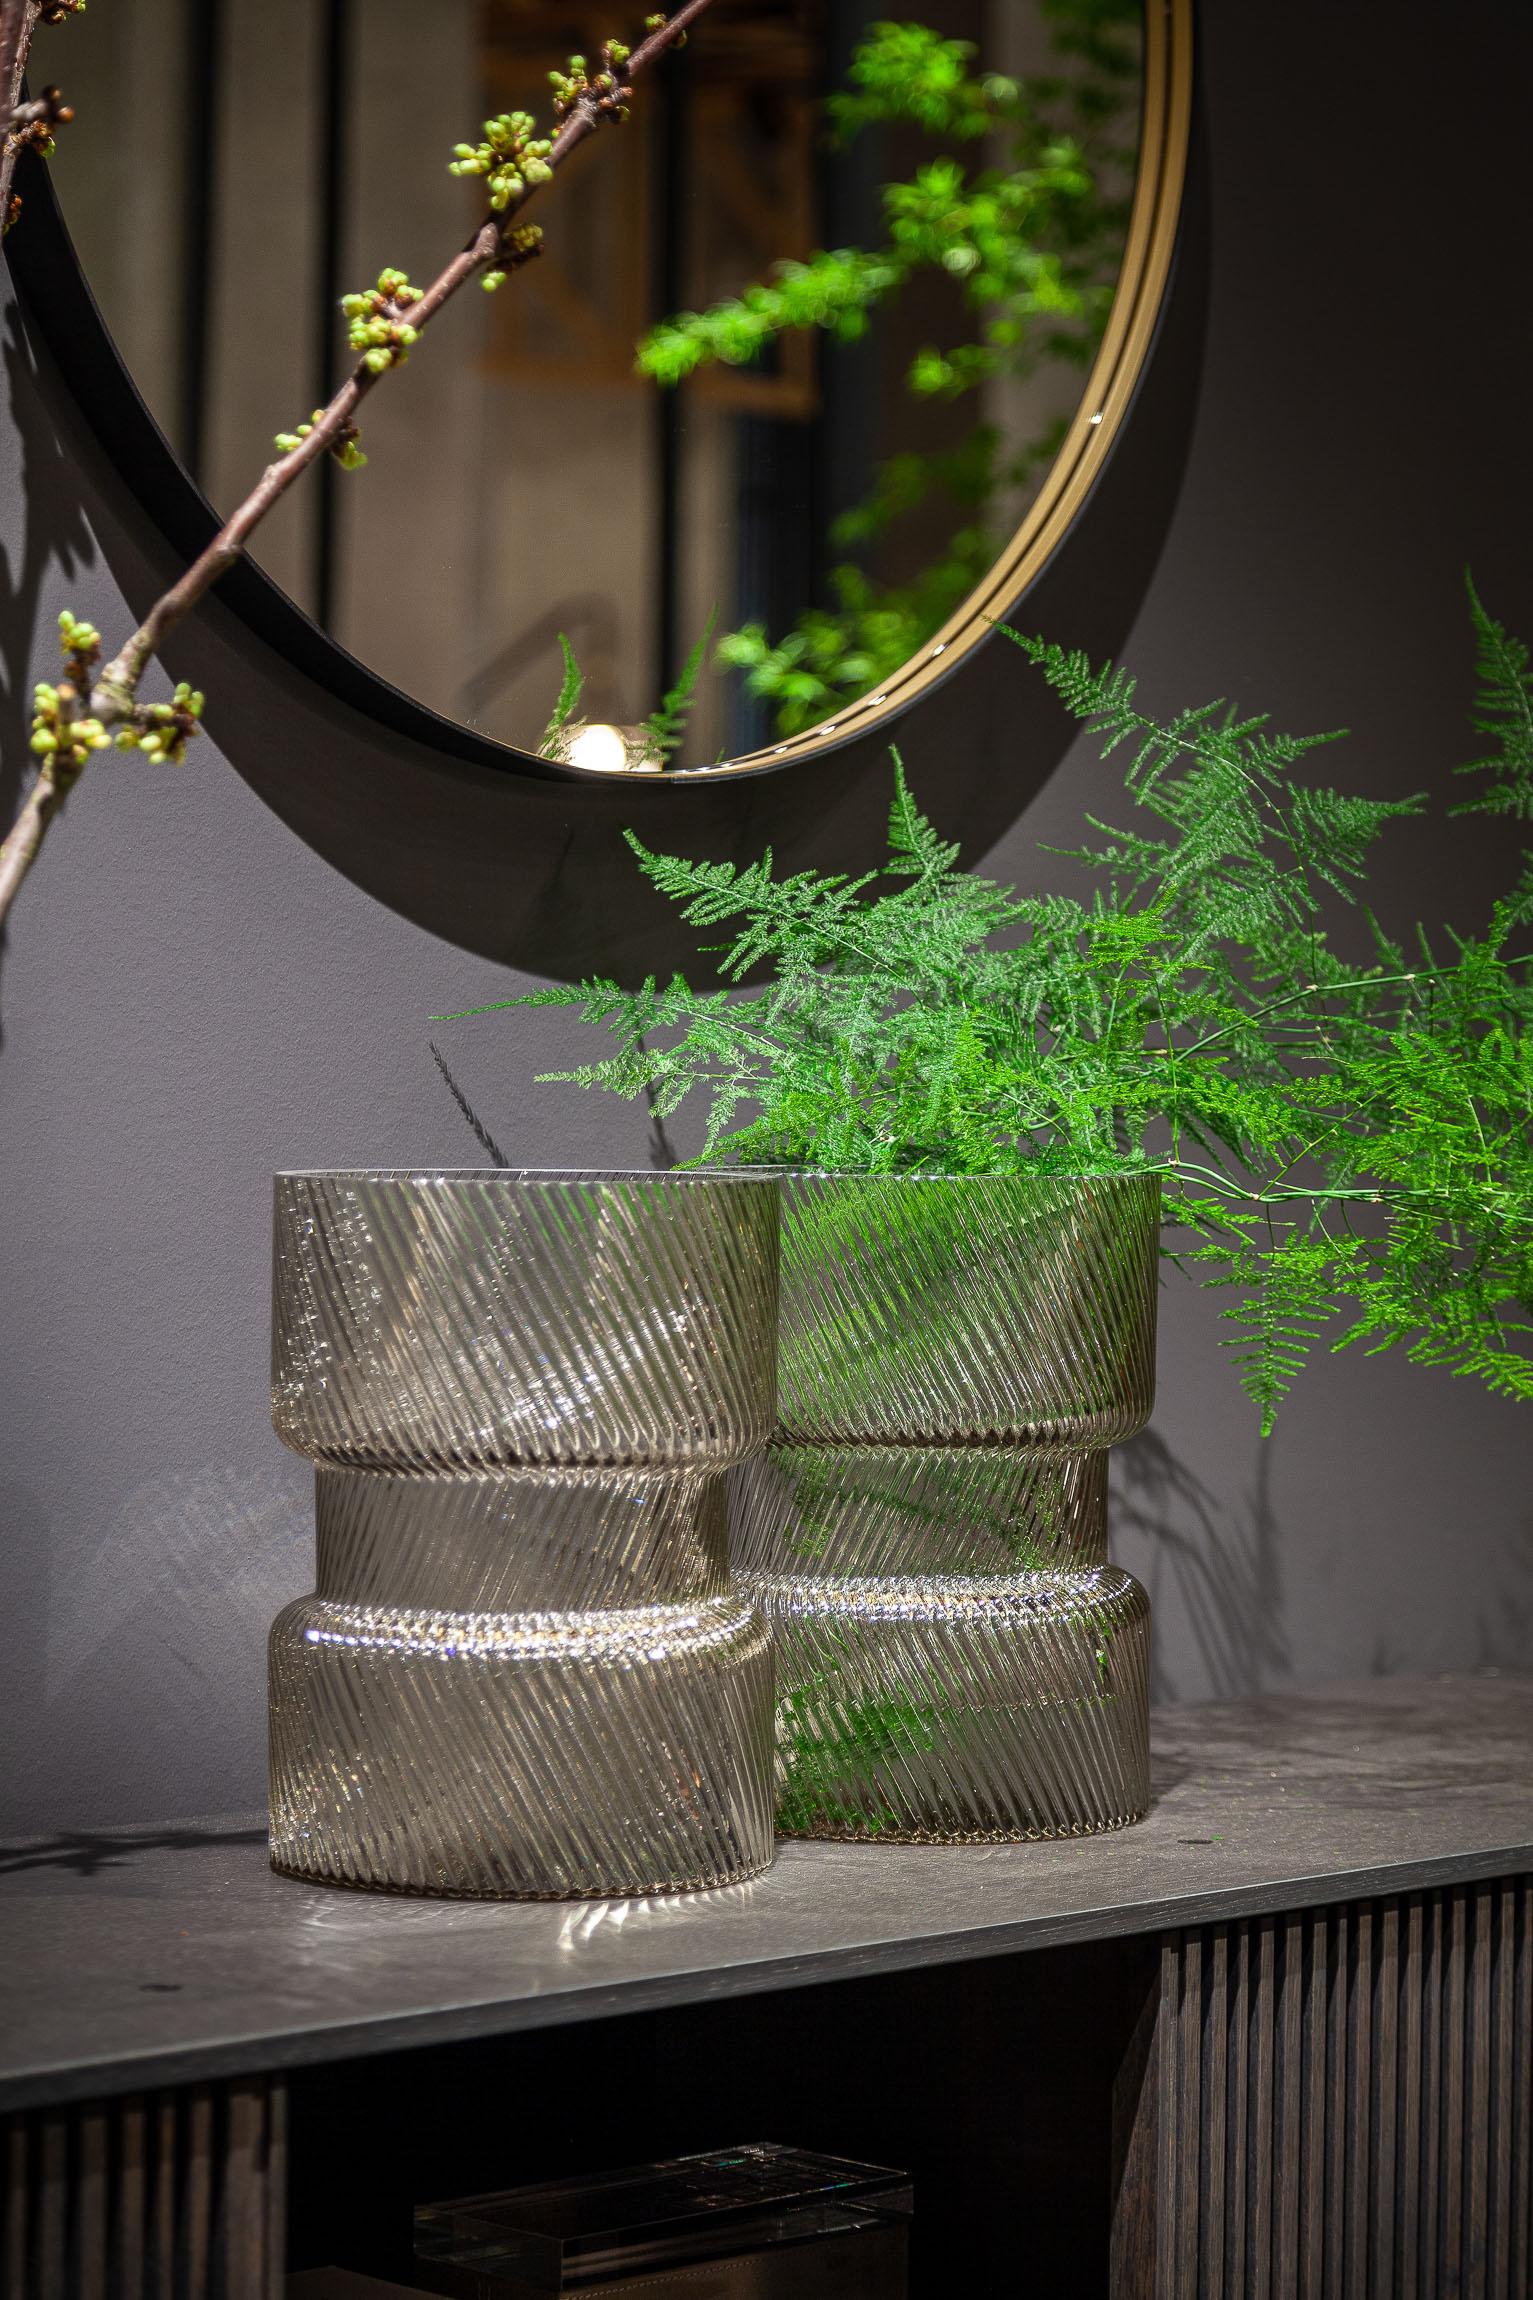 Un vase ou une sculpture ? Rips, de Carina Seth Andersson, répond à ces deux définitions : un vase pour plantes, fleurs et branches dont la forte présence formelle et matérielle lui permet également d'être un élément purement décoratif.

Une forme